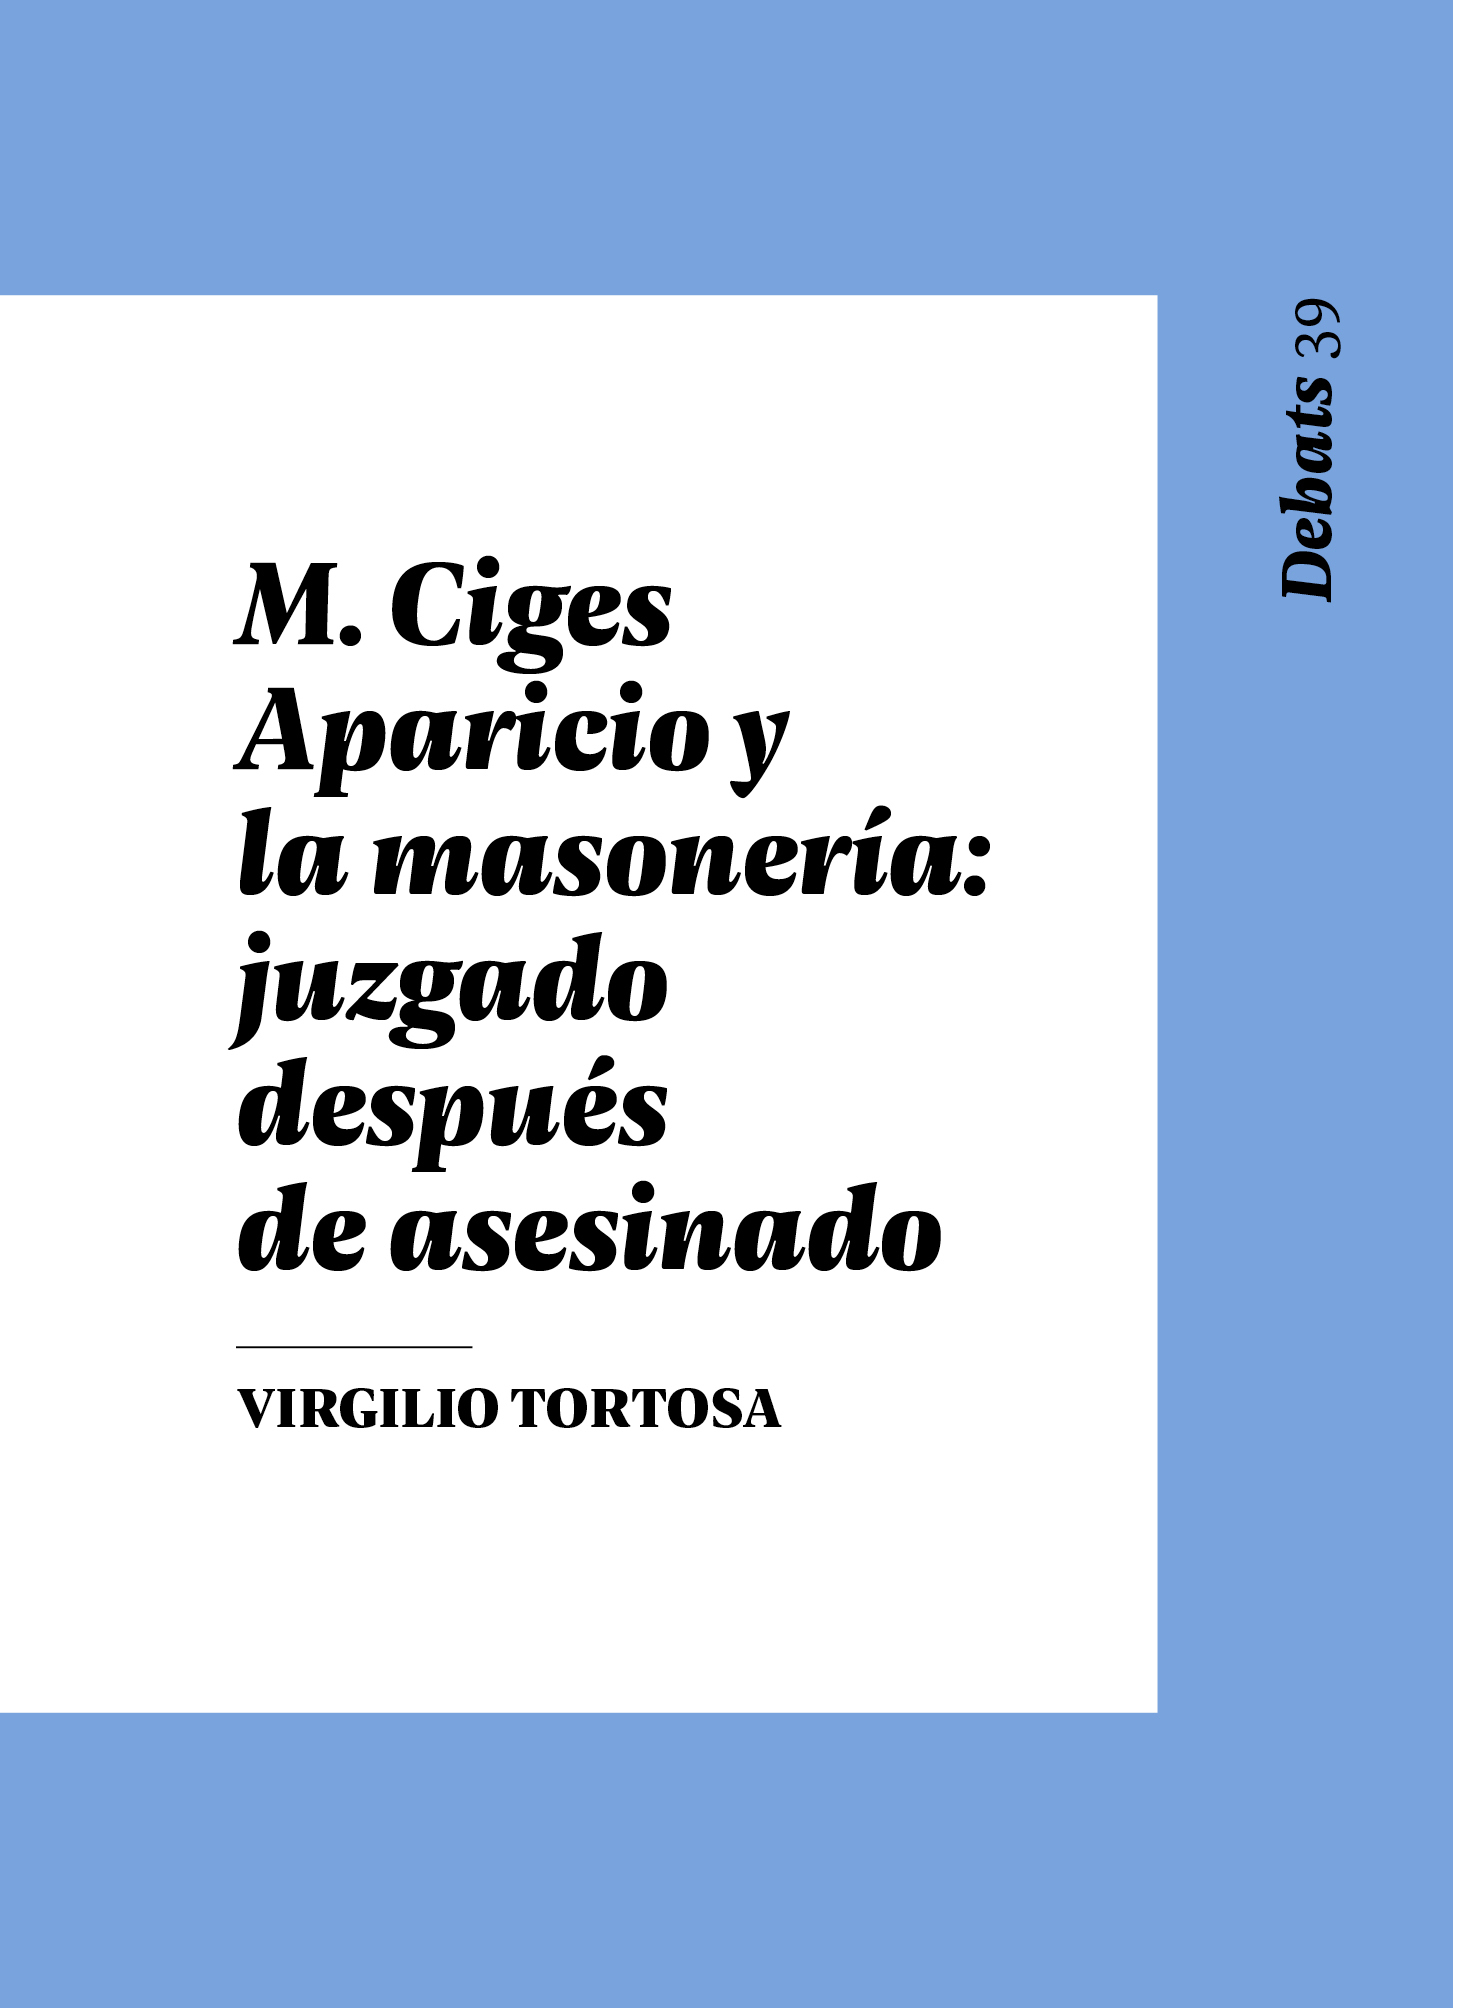 Imagen de portada del libro M. Ciges Aparicio y la masonería